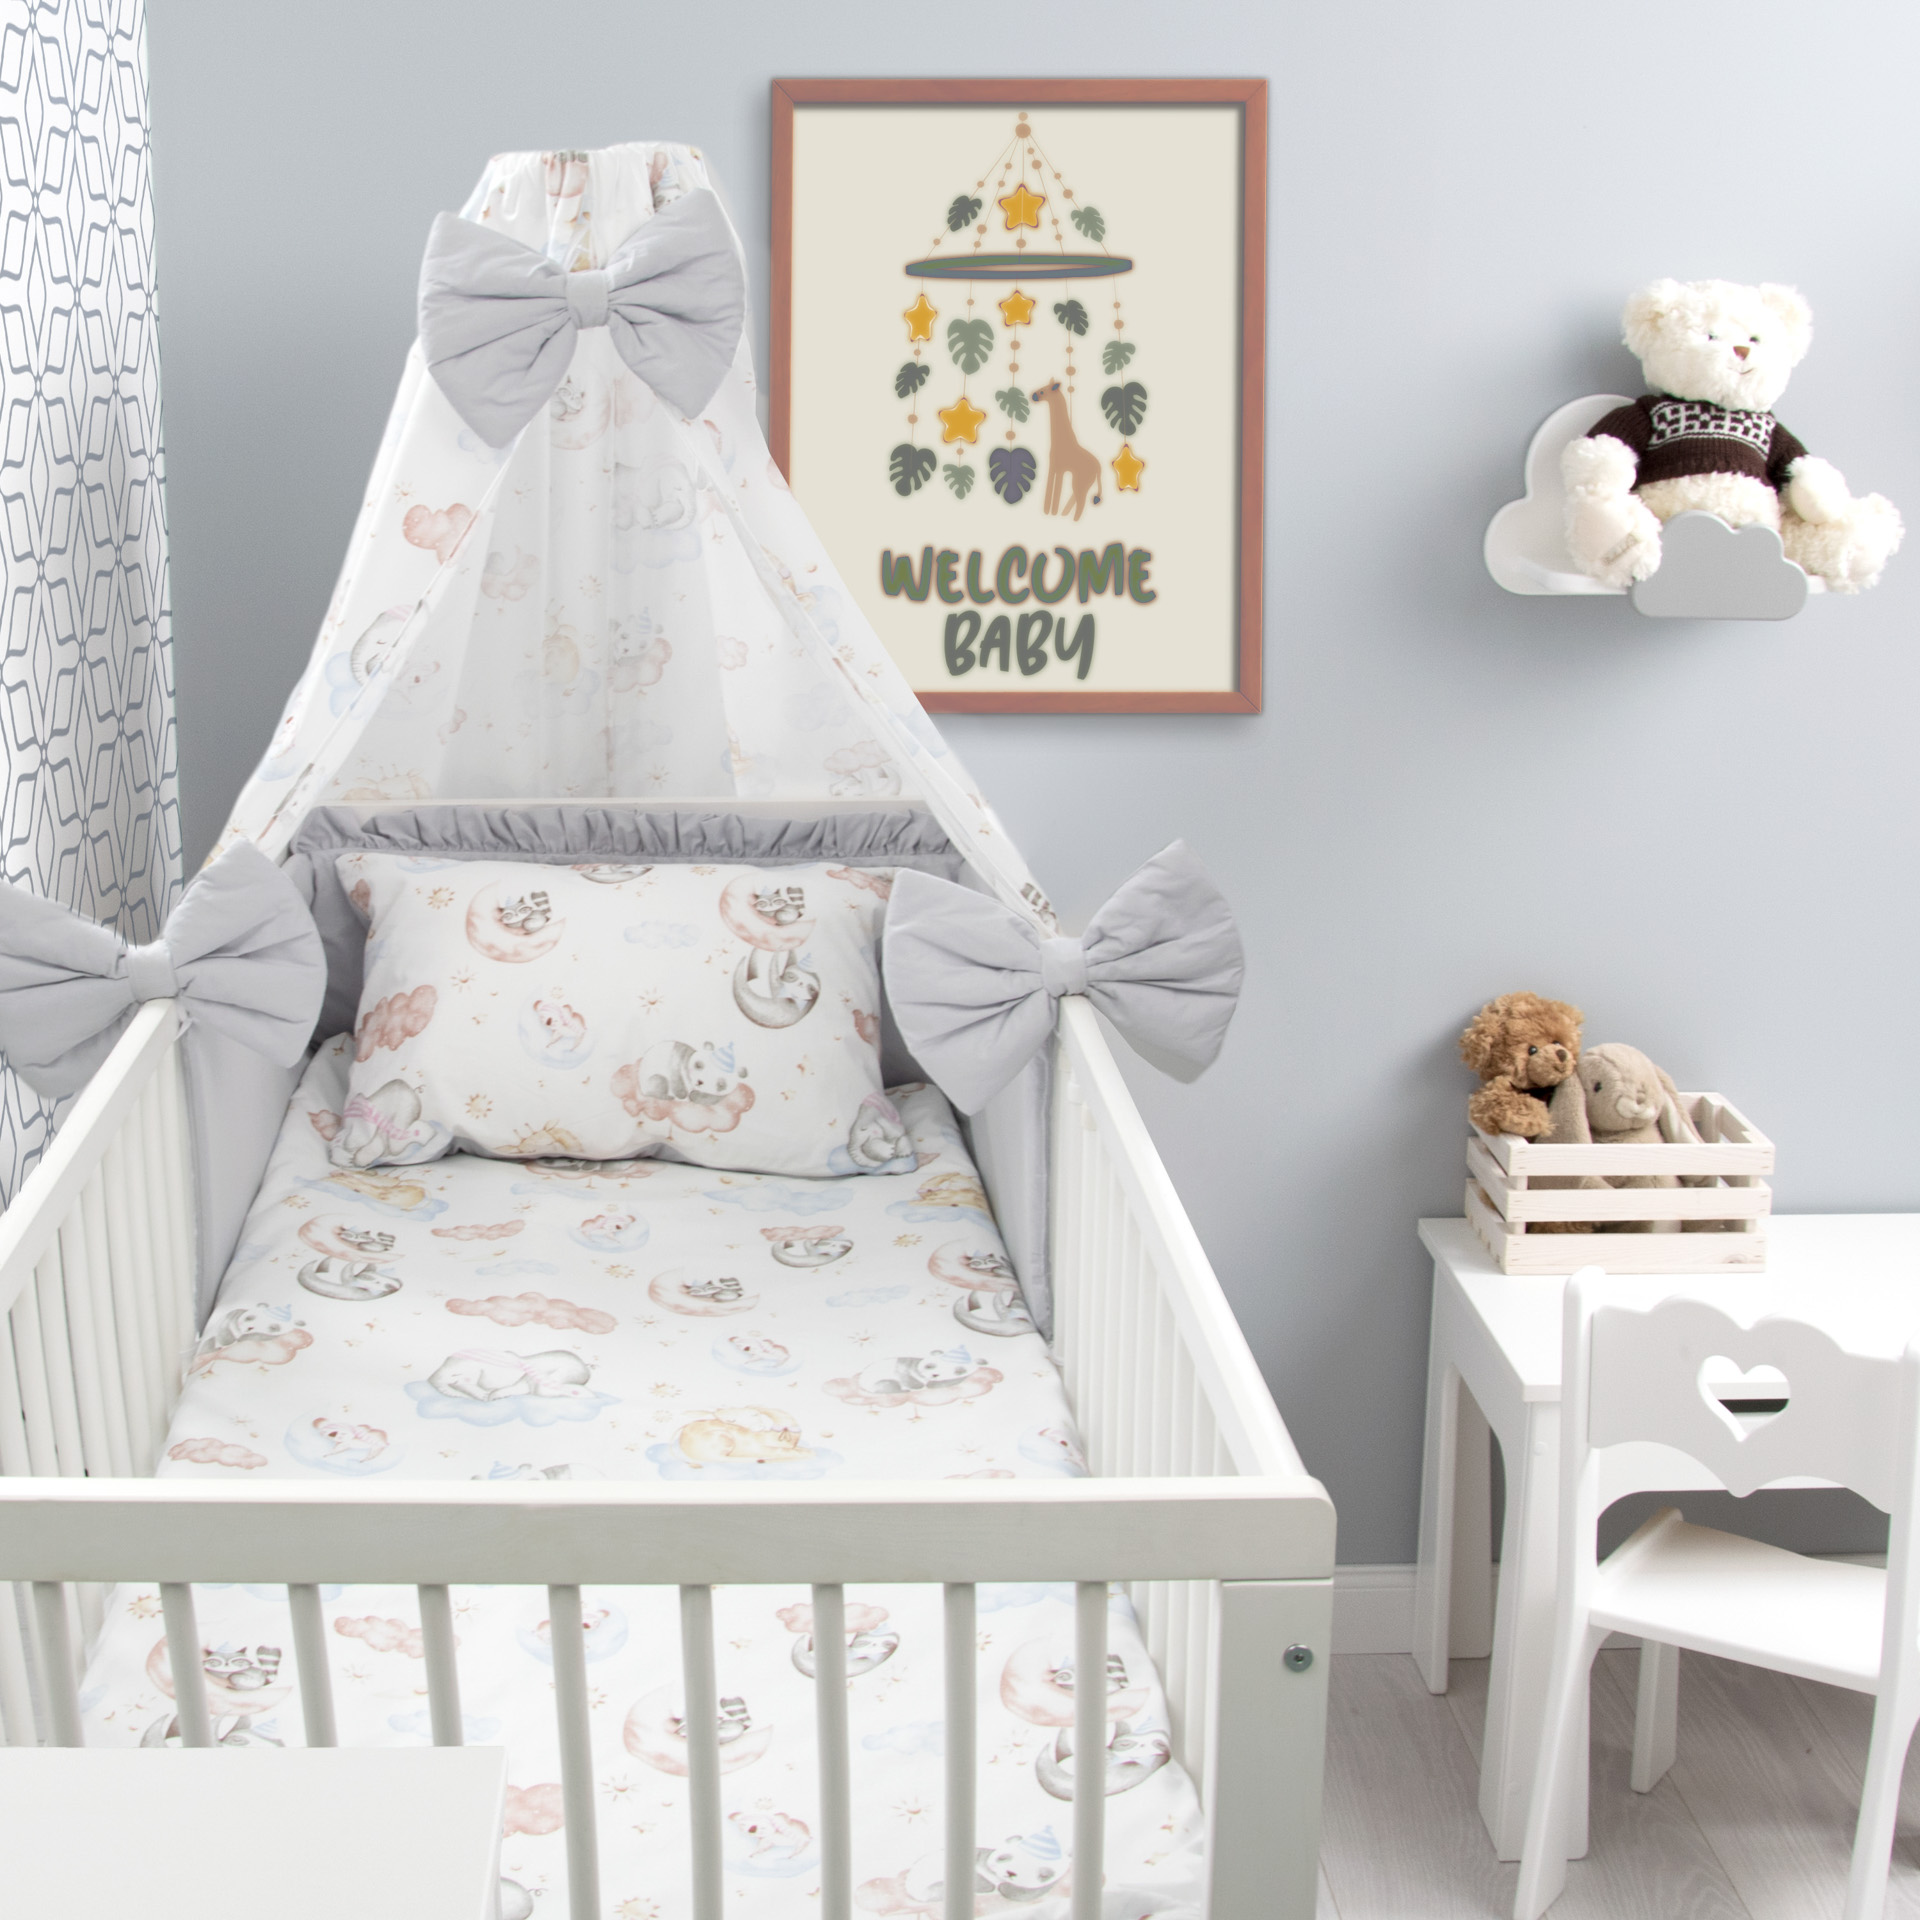 Baby 3PC Bettwäsche Set Kissen Bettbezug Nestchen Für Kinderbett 120x60cm Grau 